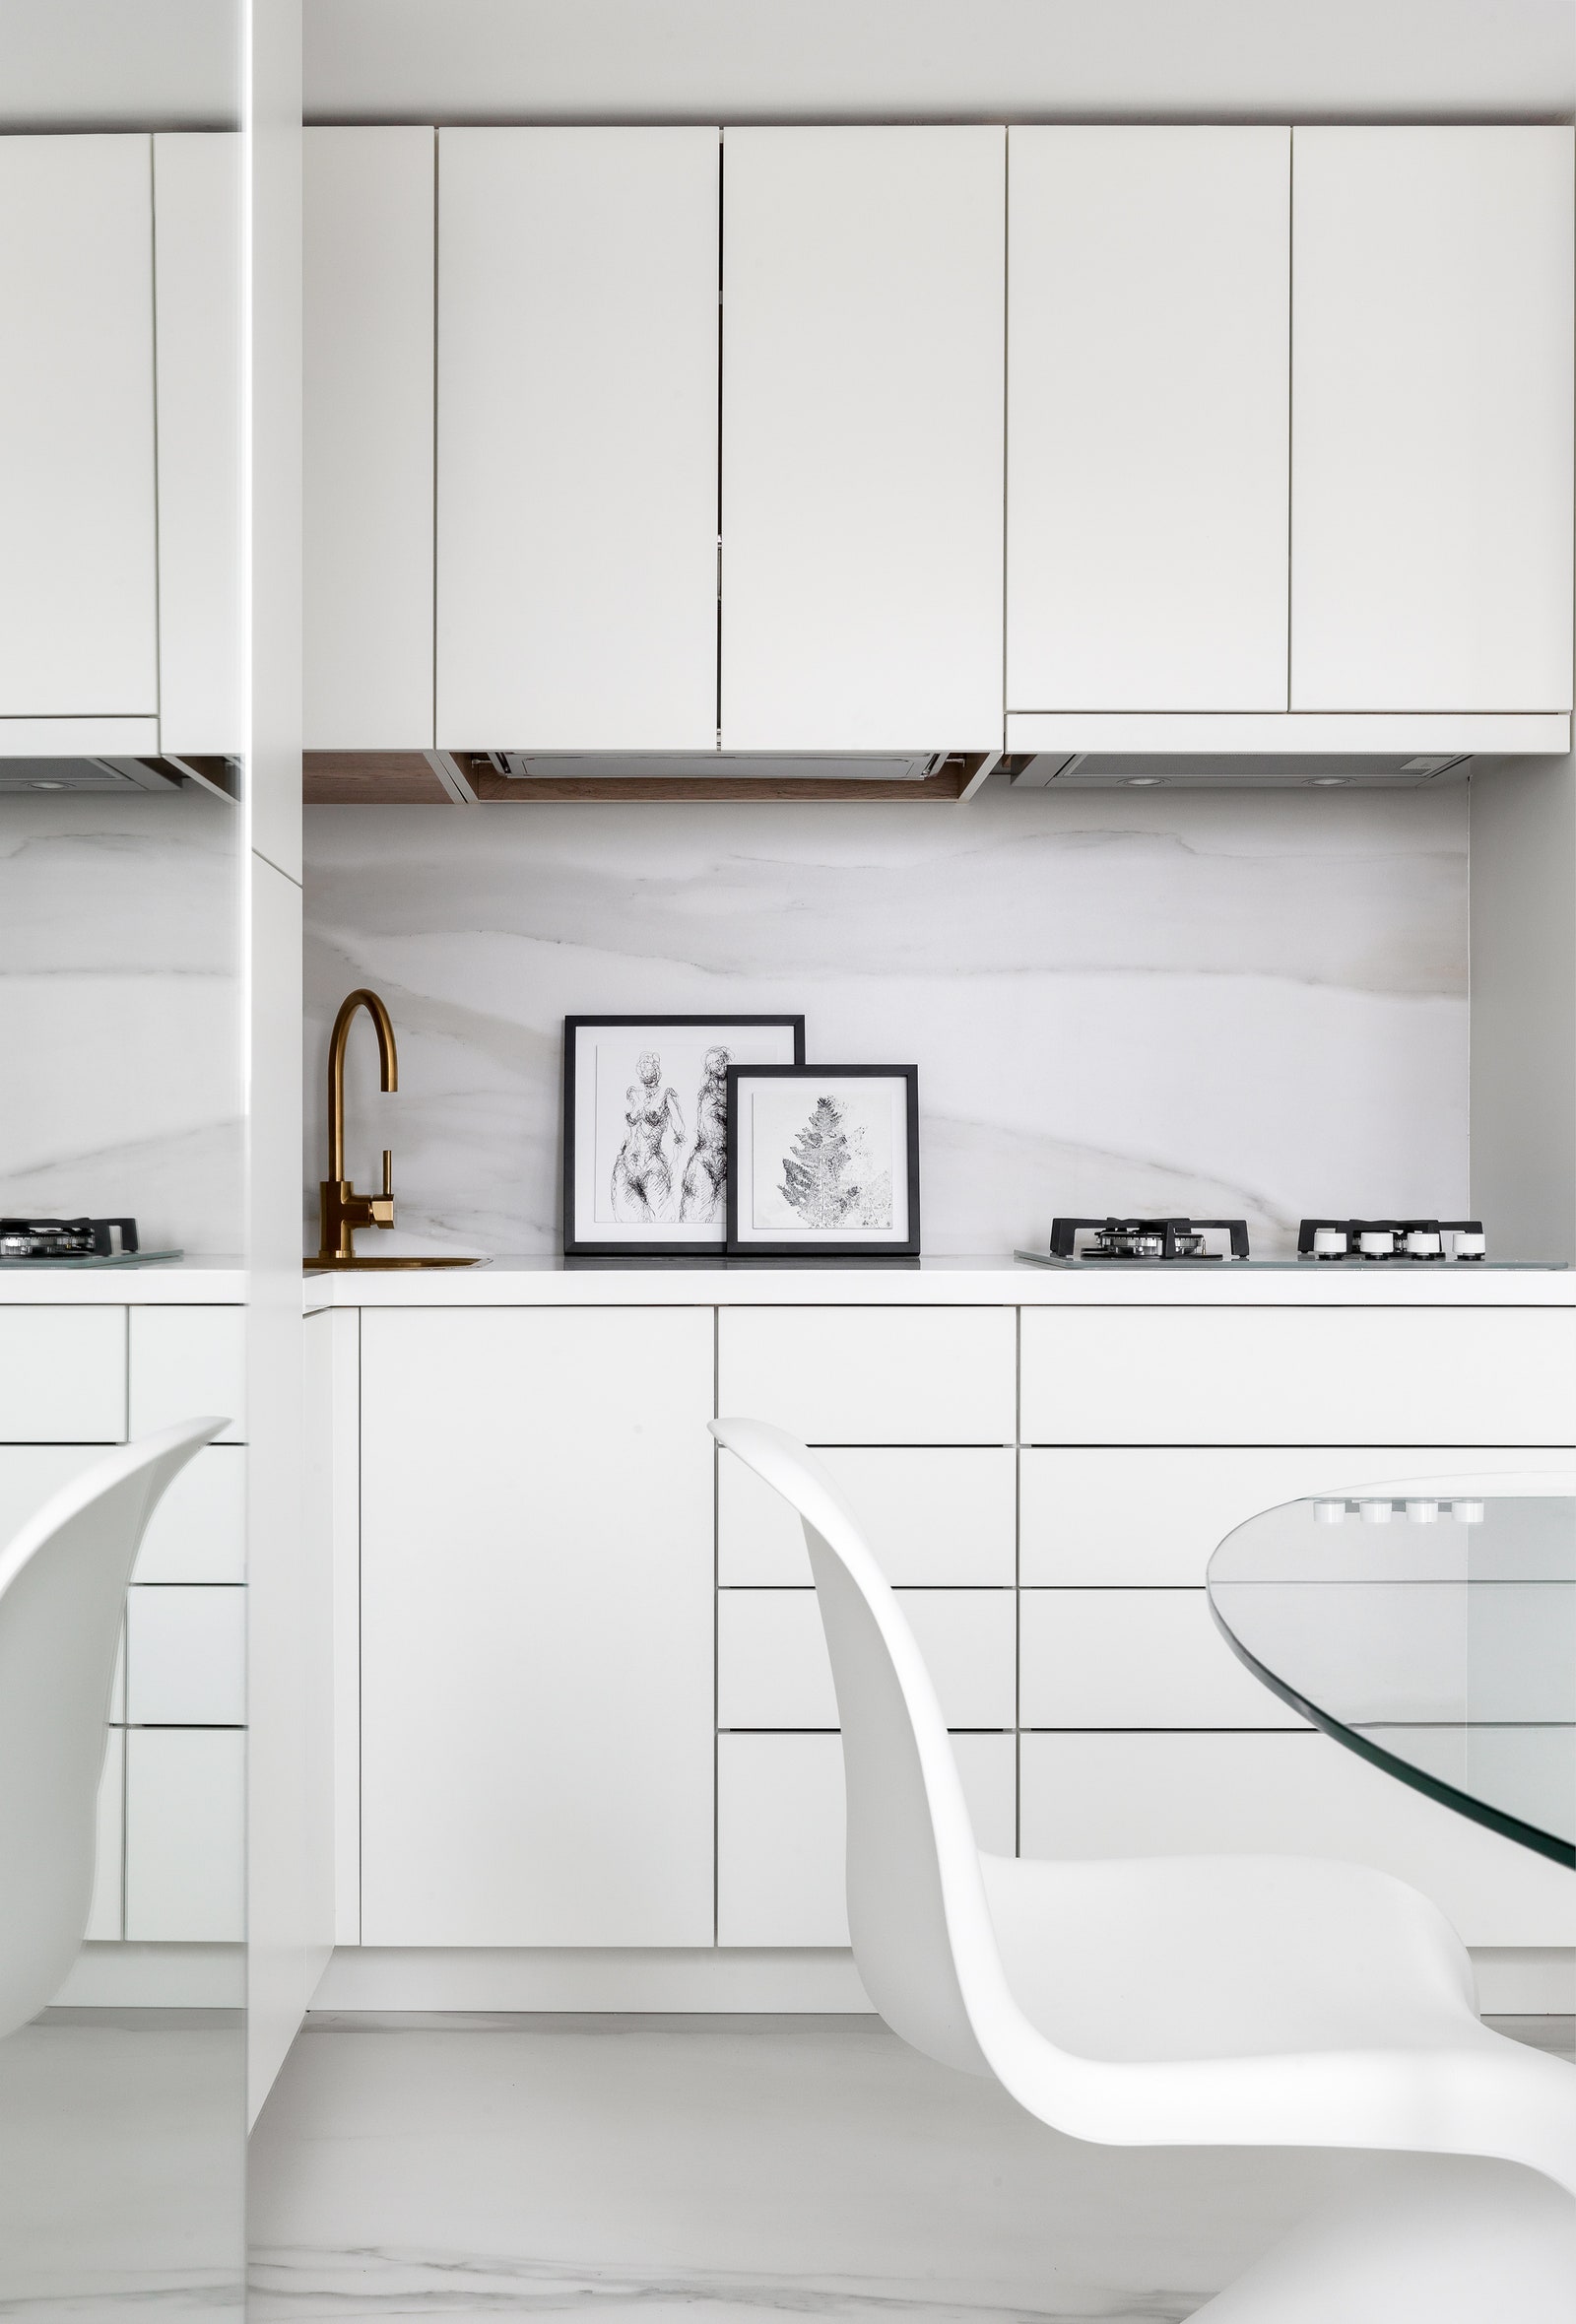 Кухня. Стул Pantone Vitra кухонные шкафы выполнены на заказ по эскизам Atelier Interior раковина и смеситель Omoikiri.